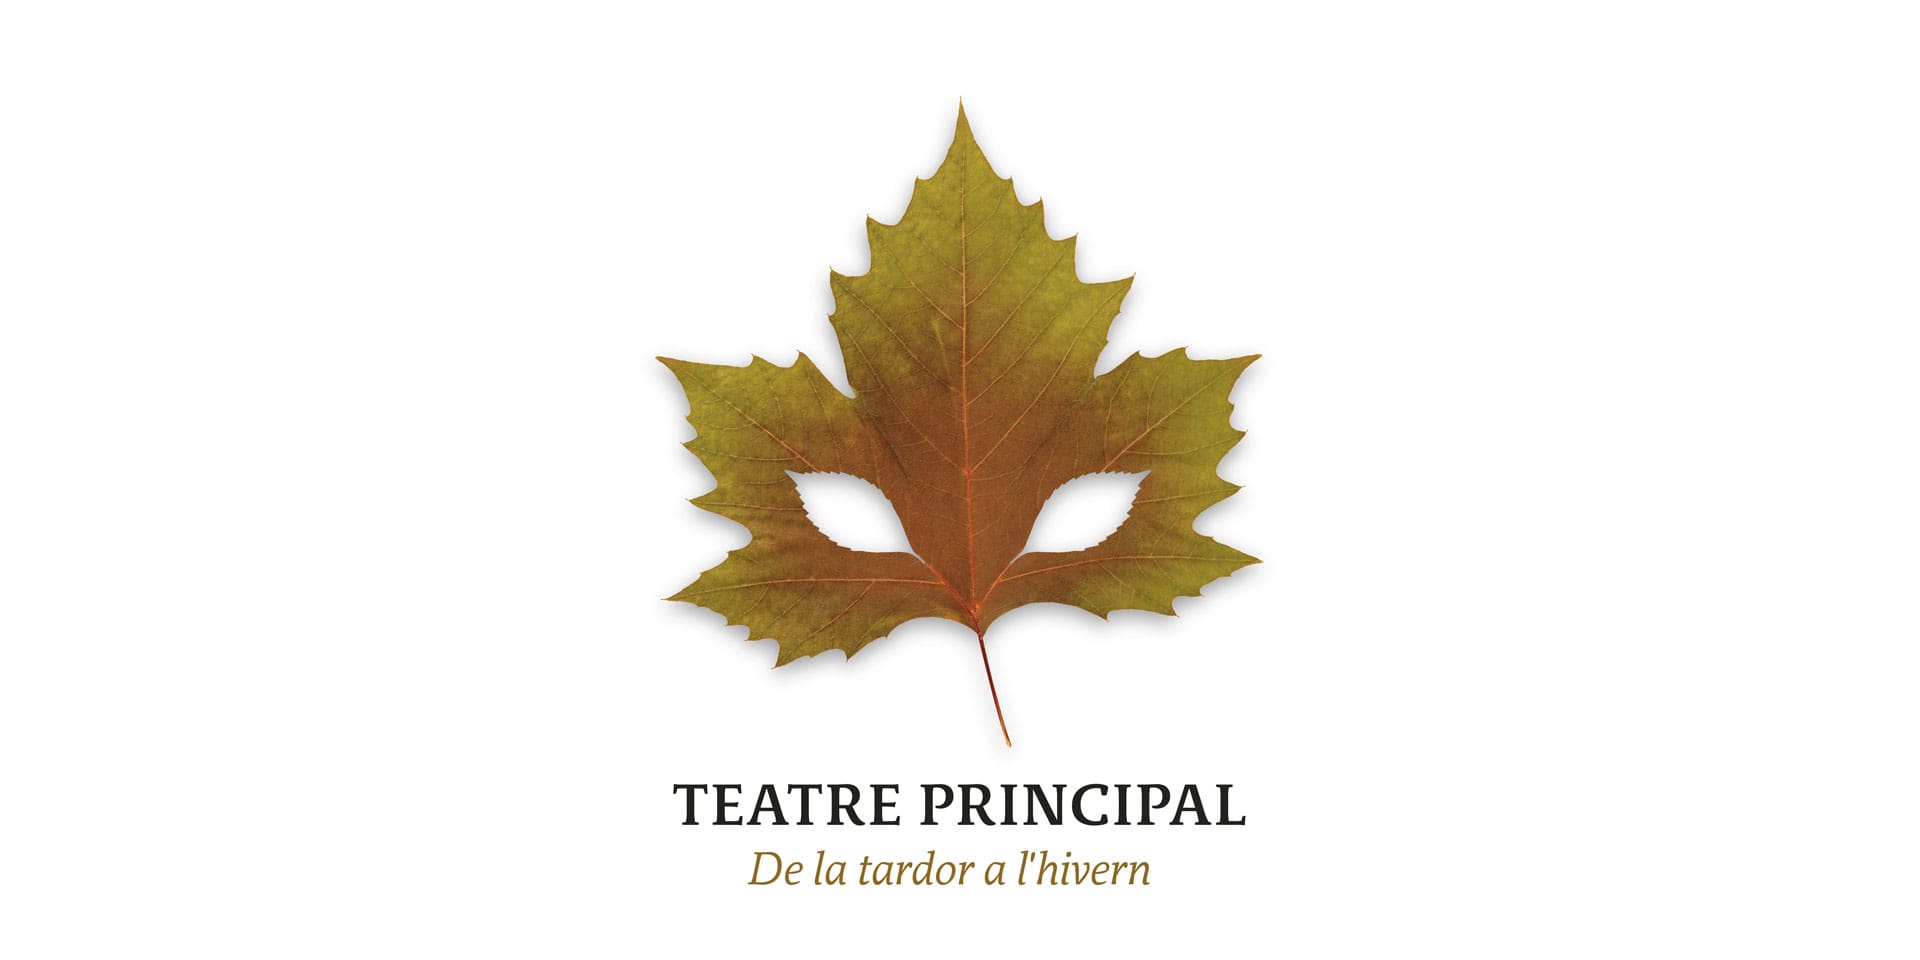 Diseño de la imagen de la nueva temporada del Teatre Principal de València